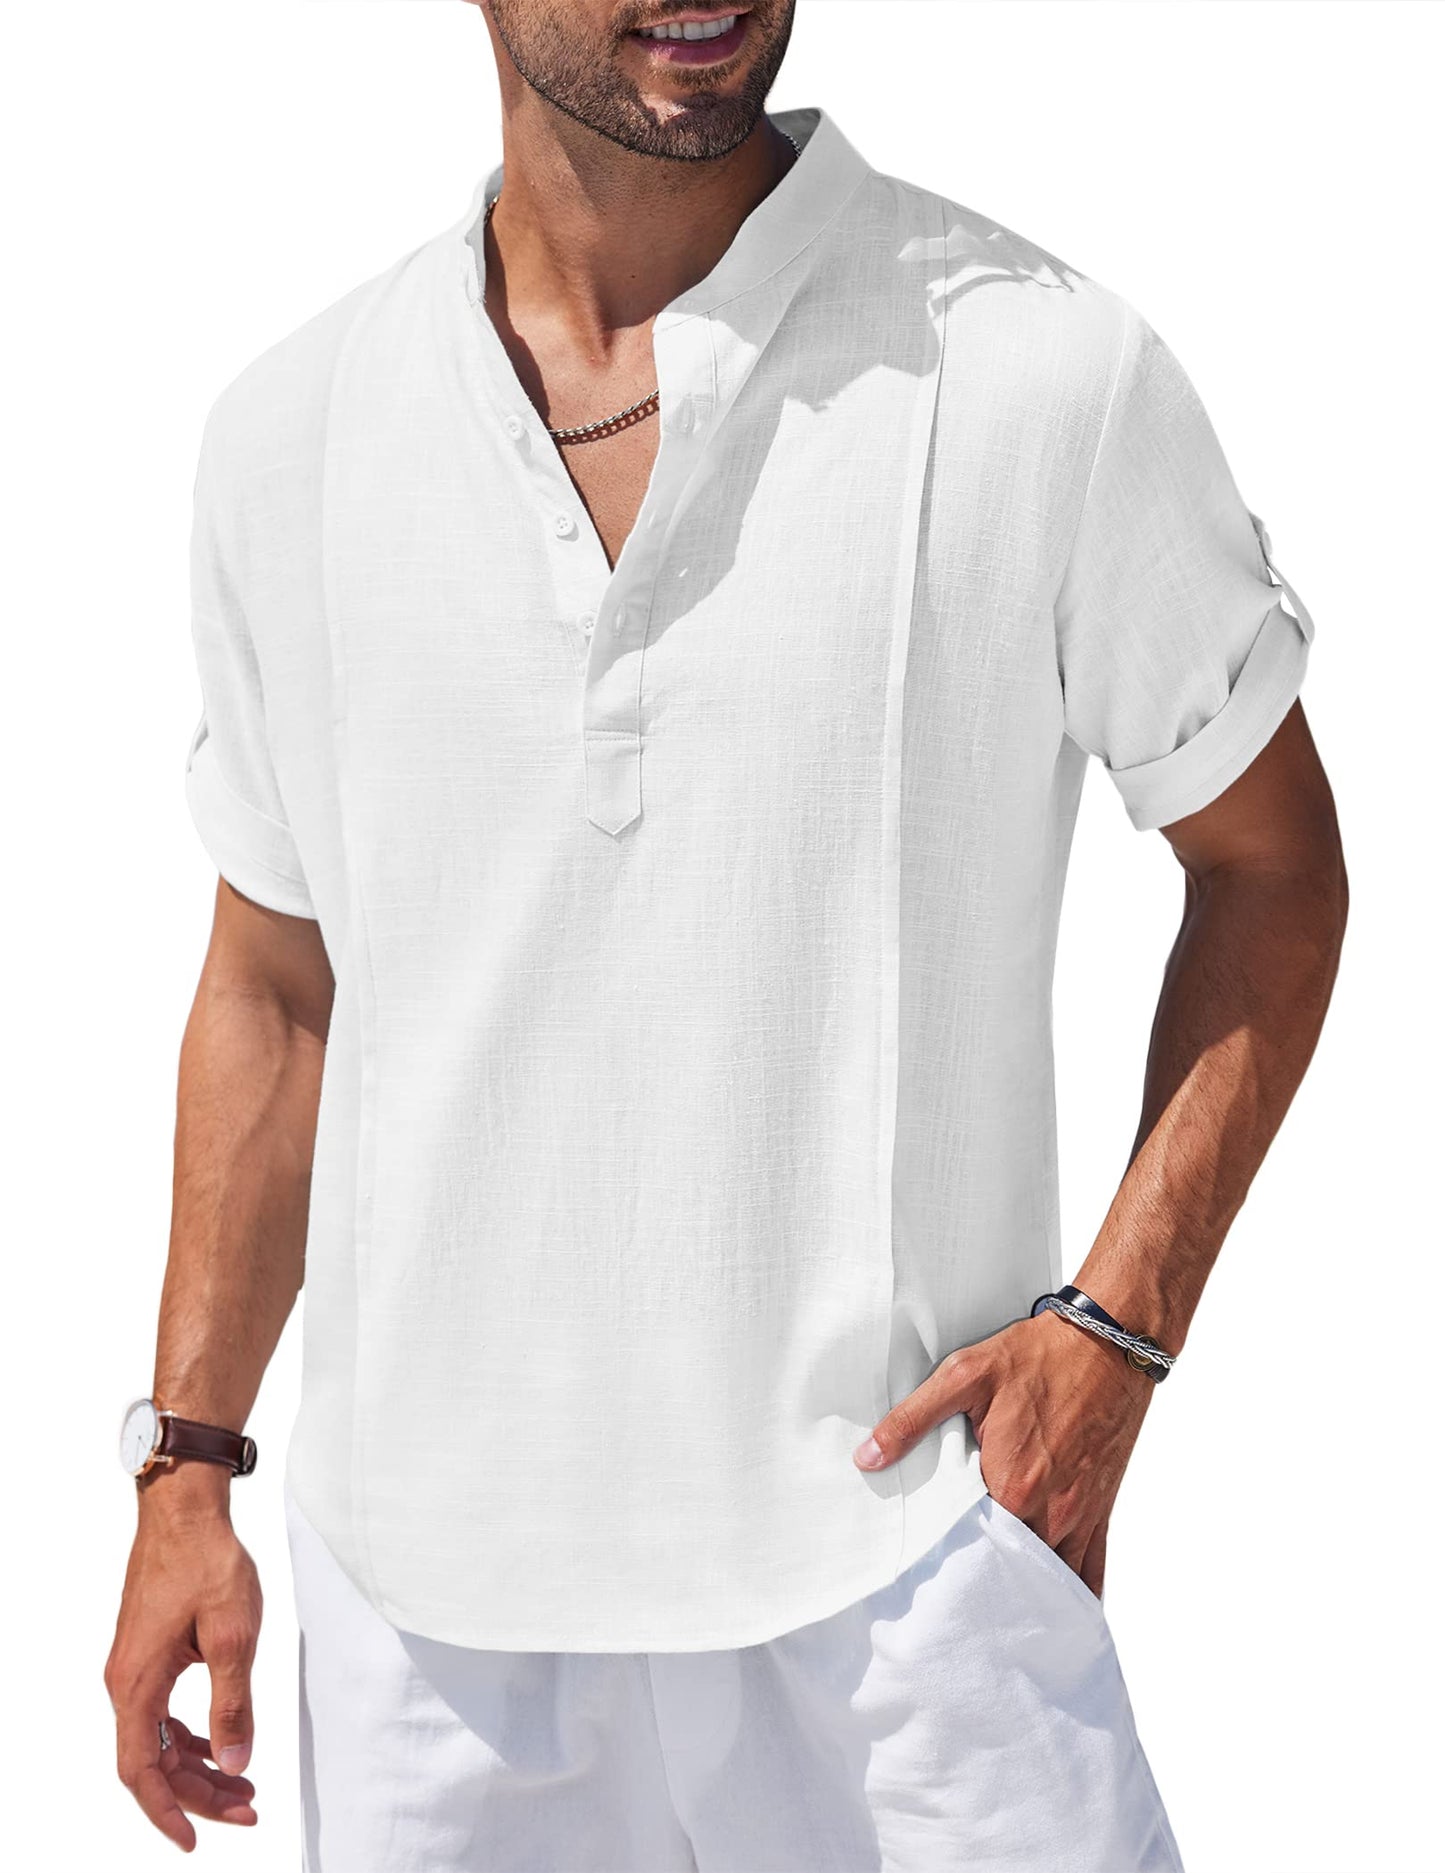 Men's Beach Short Sleeve T Shirt